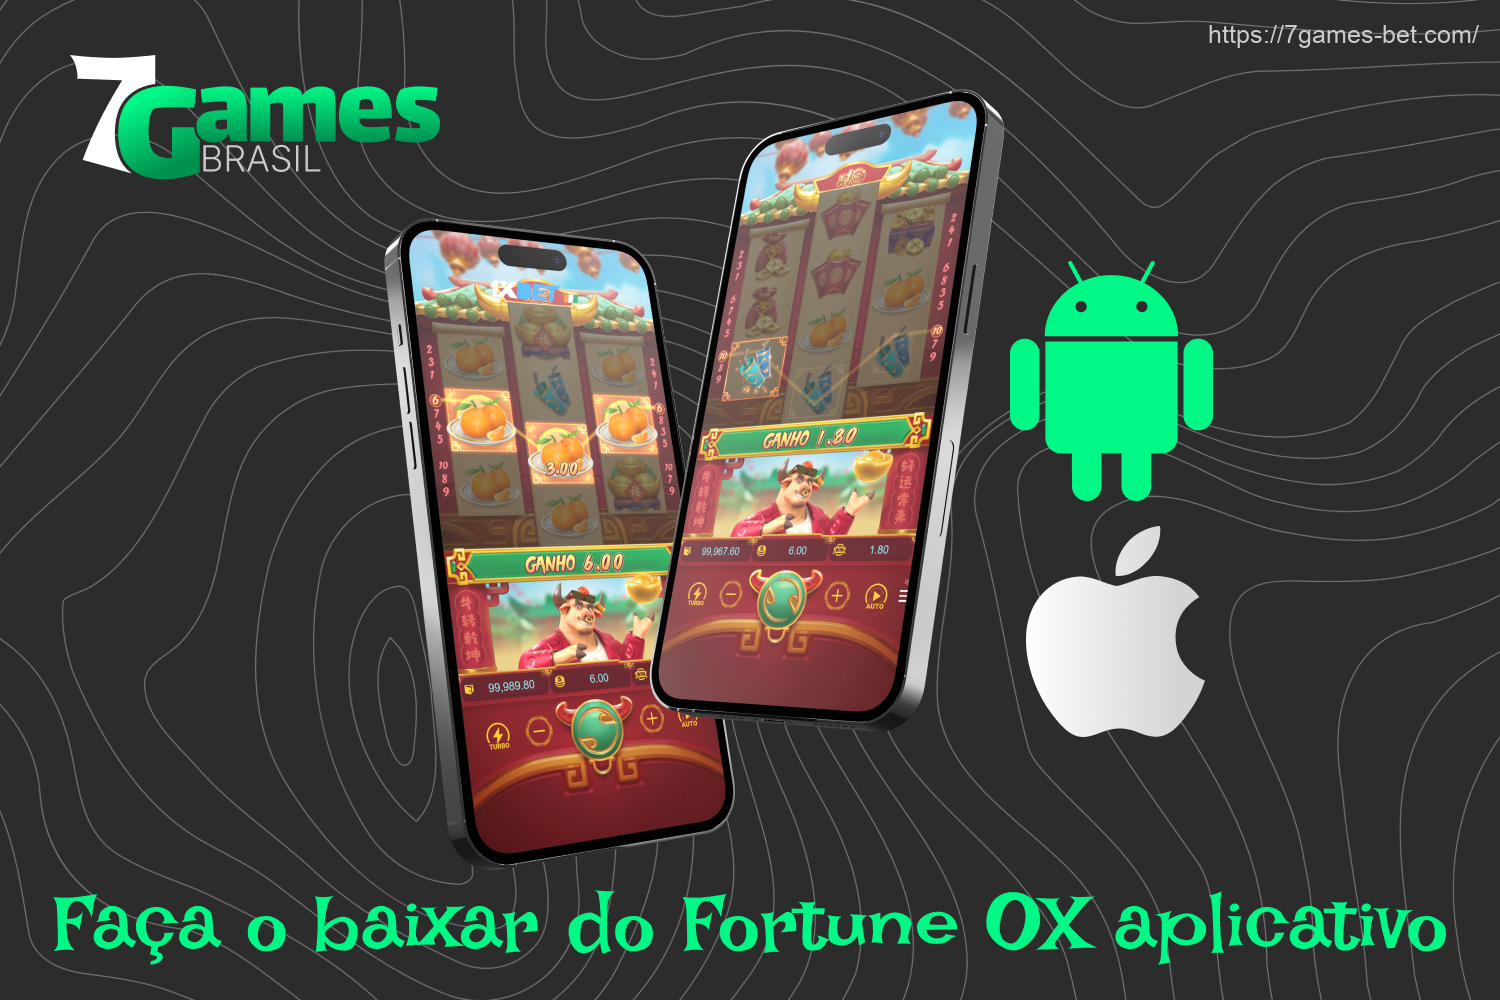 Os brasileiros têm a chance de jogar Fortune Ox 7Games graças a um aplicativo móvel gratuito